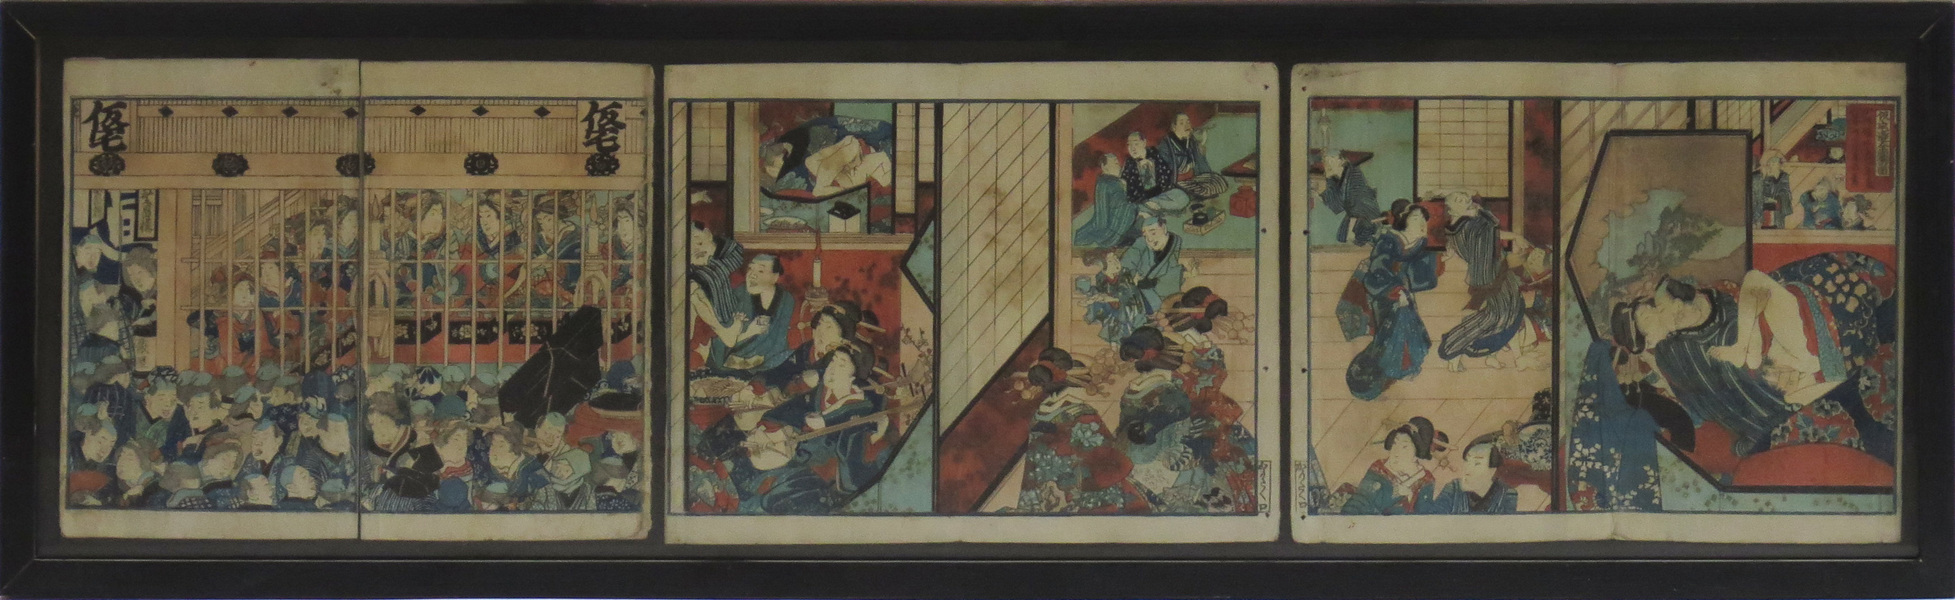 Hokusai, Katsushika, träsnitt, 3 st, shunga, motiv från en så kallad "Pillow Book",_3490a_8d86f7153e50c71_lg.jpeg